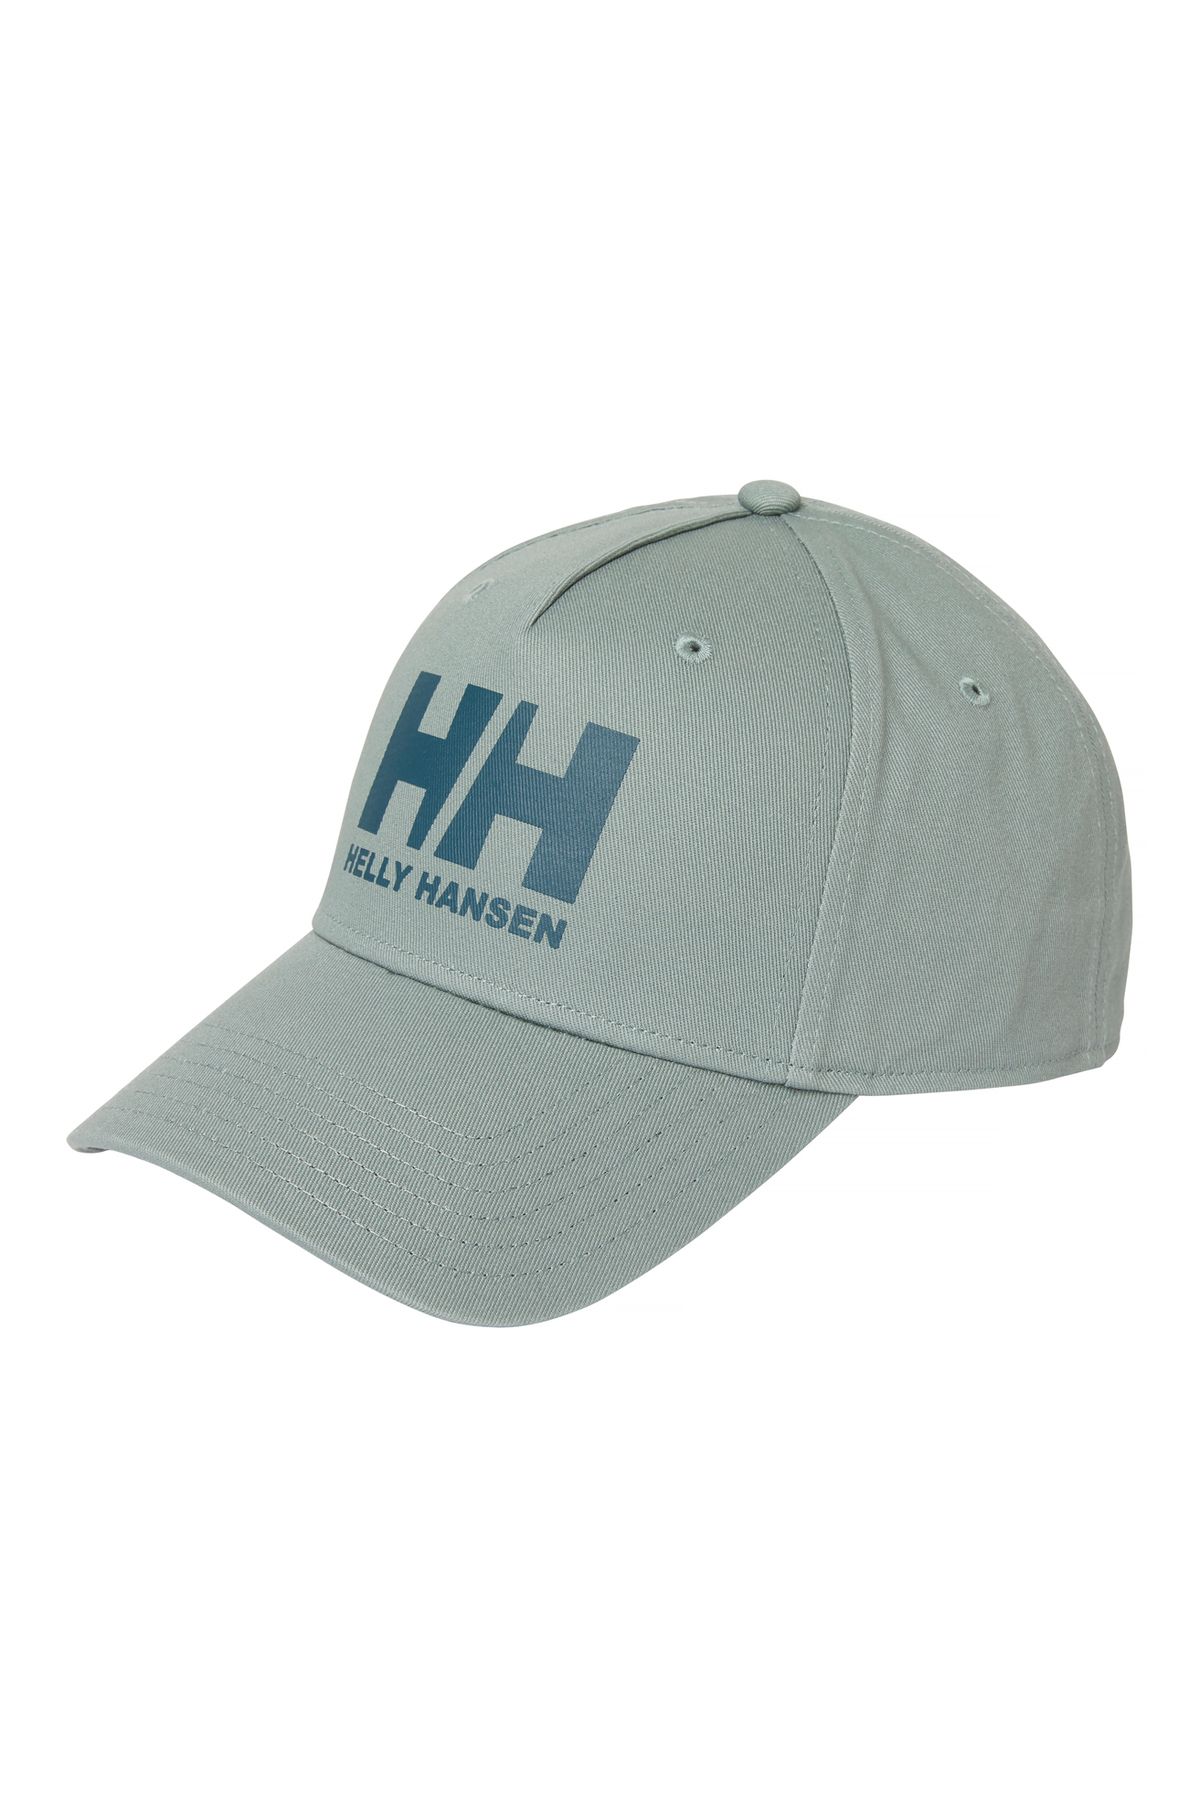 Helly Hansen Açık Yeşil Unisex Şapka HHA.67434_HH BALL